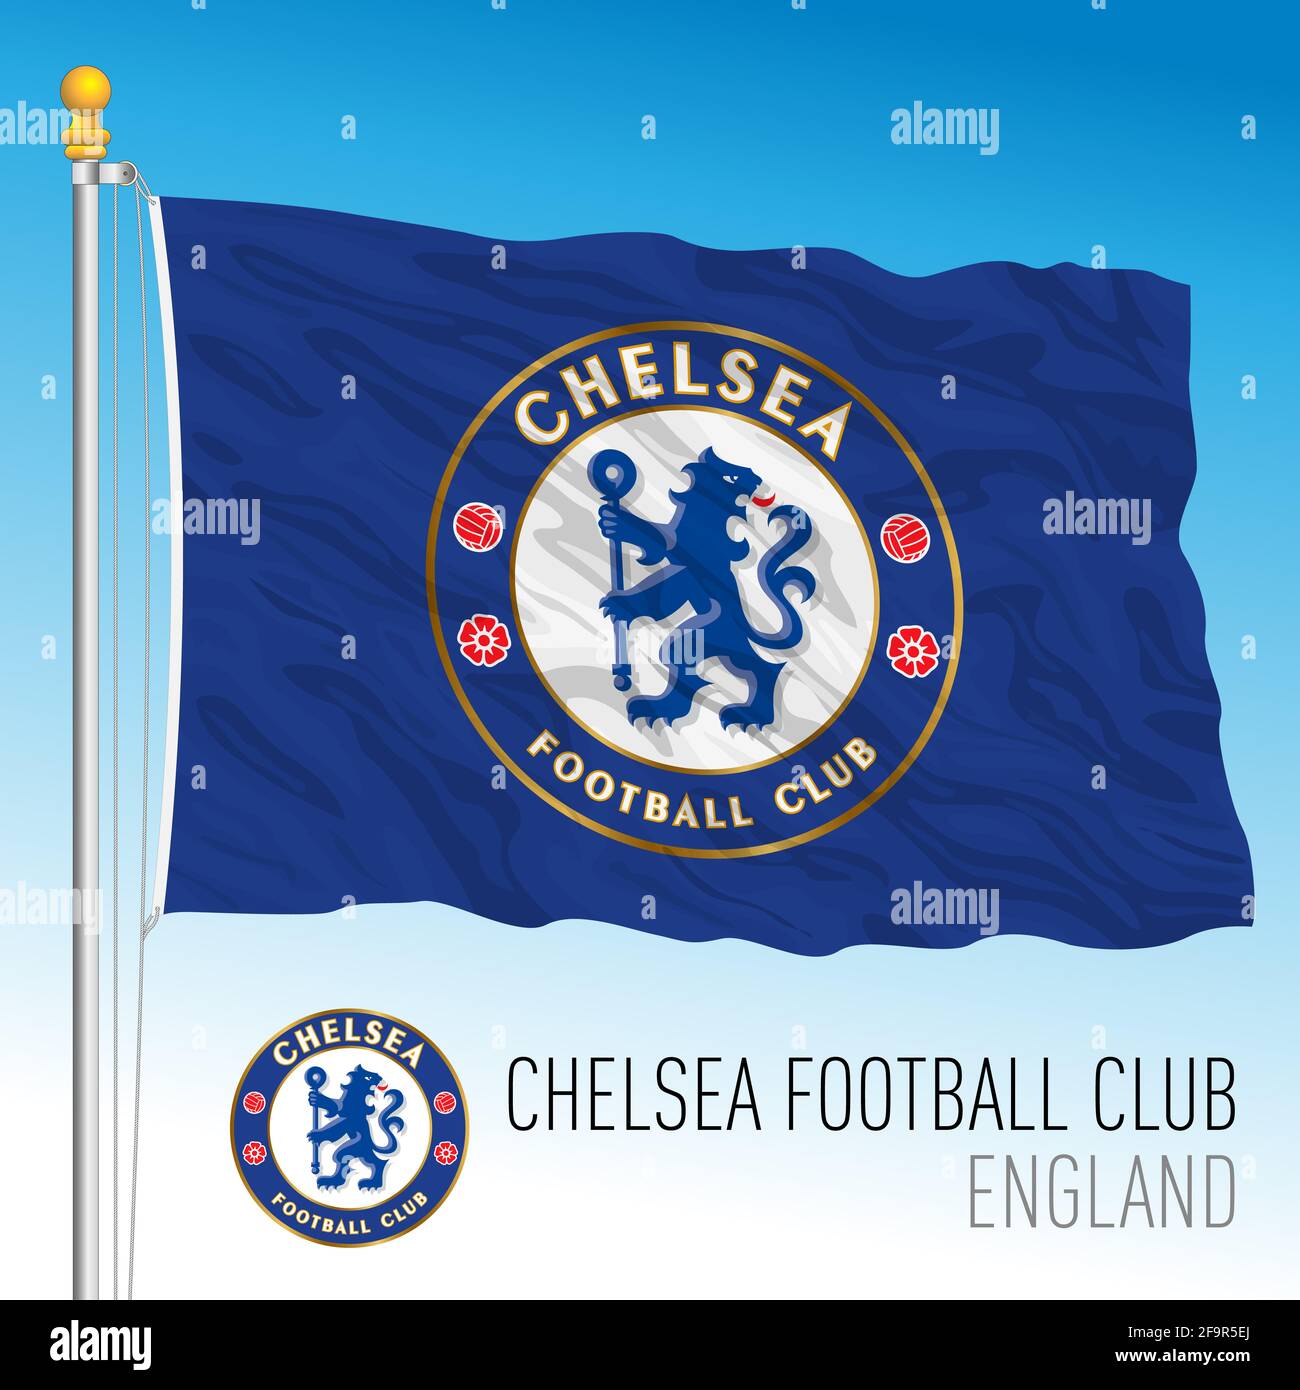 Desarmado Laboratorio equivocado Europa, año 2021, la bandera del Chelsea Football Club y el escudo del  equipo en el nuevo campeonato de la Super Liga, ilustración Fotografía de  stock - Alamy